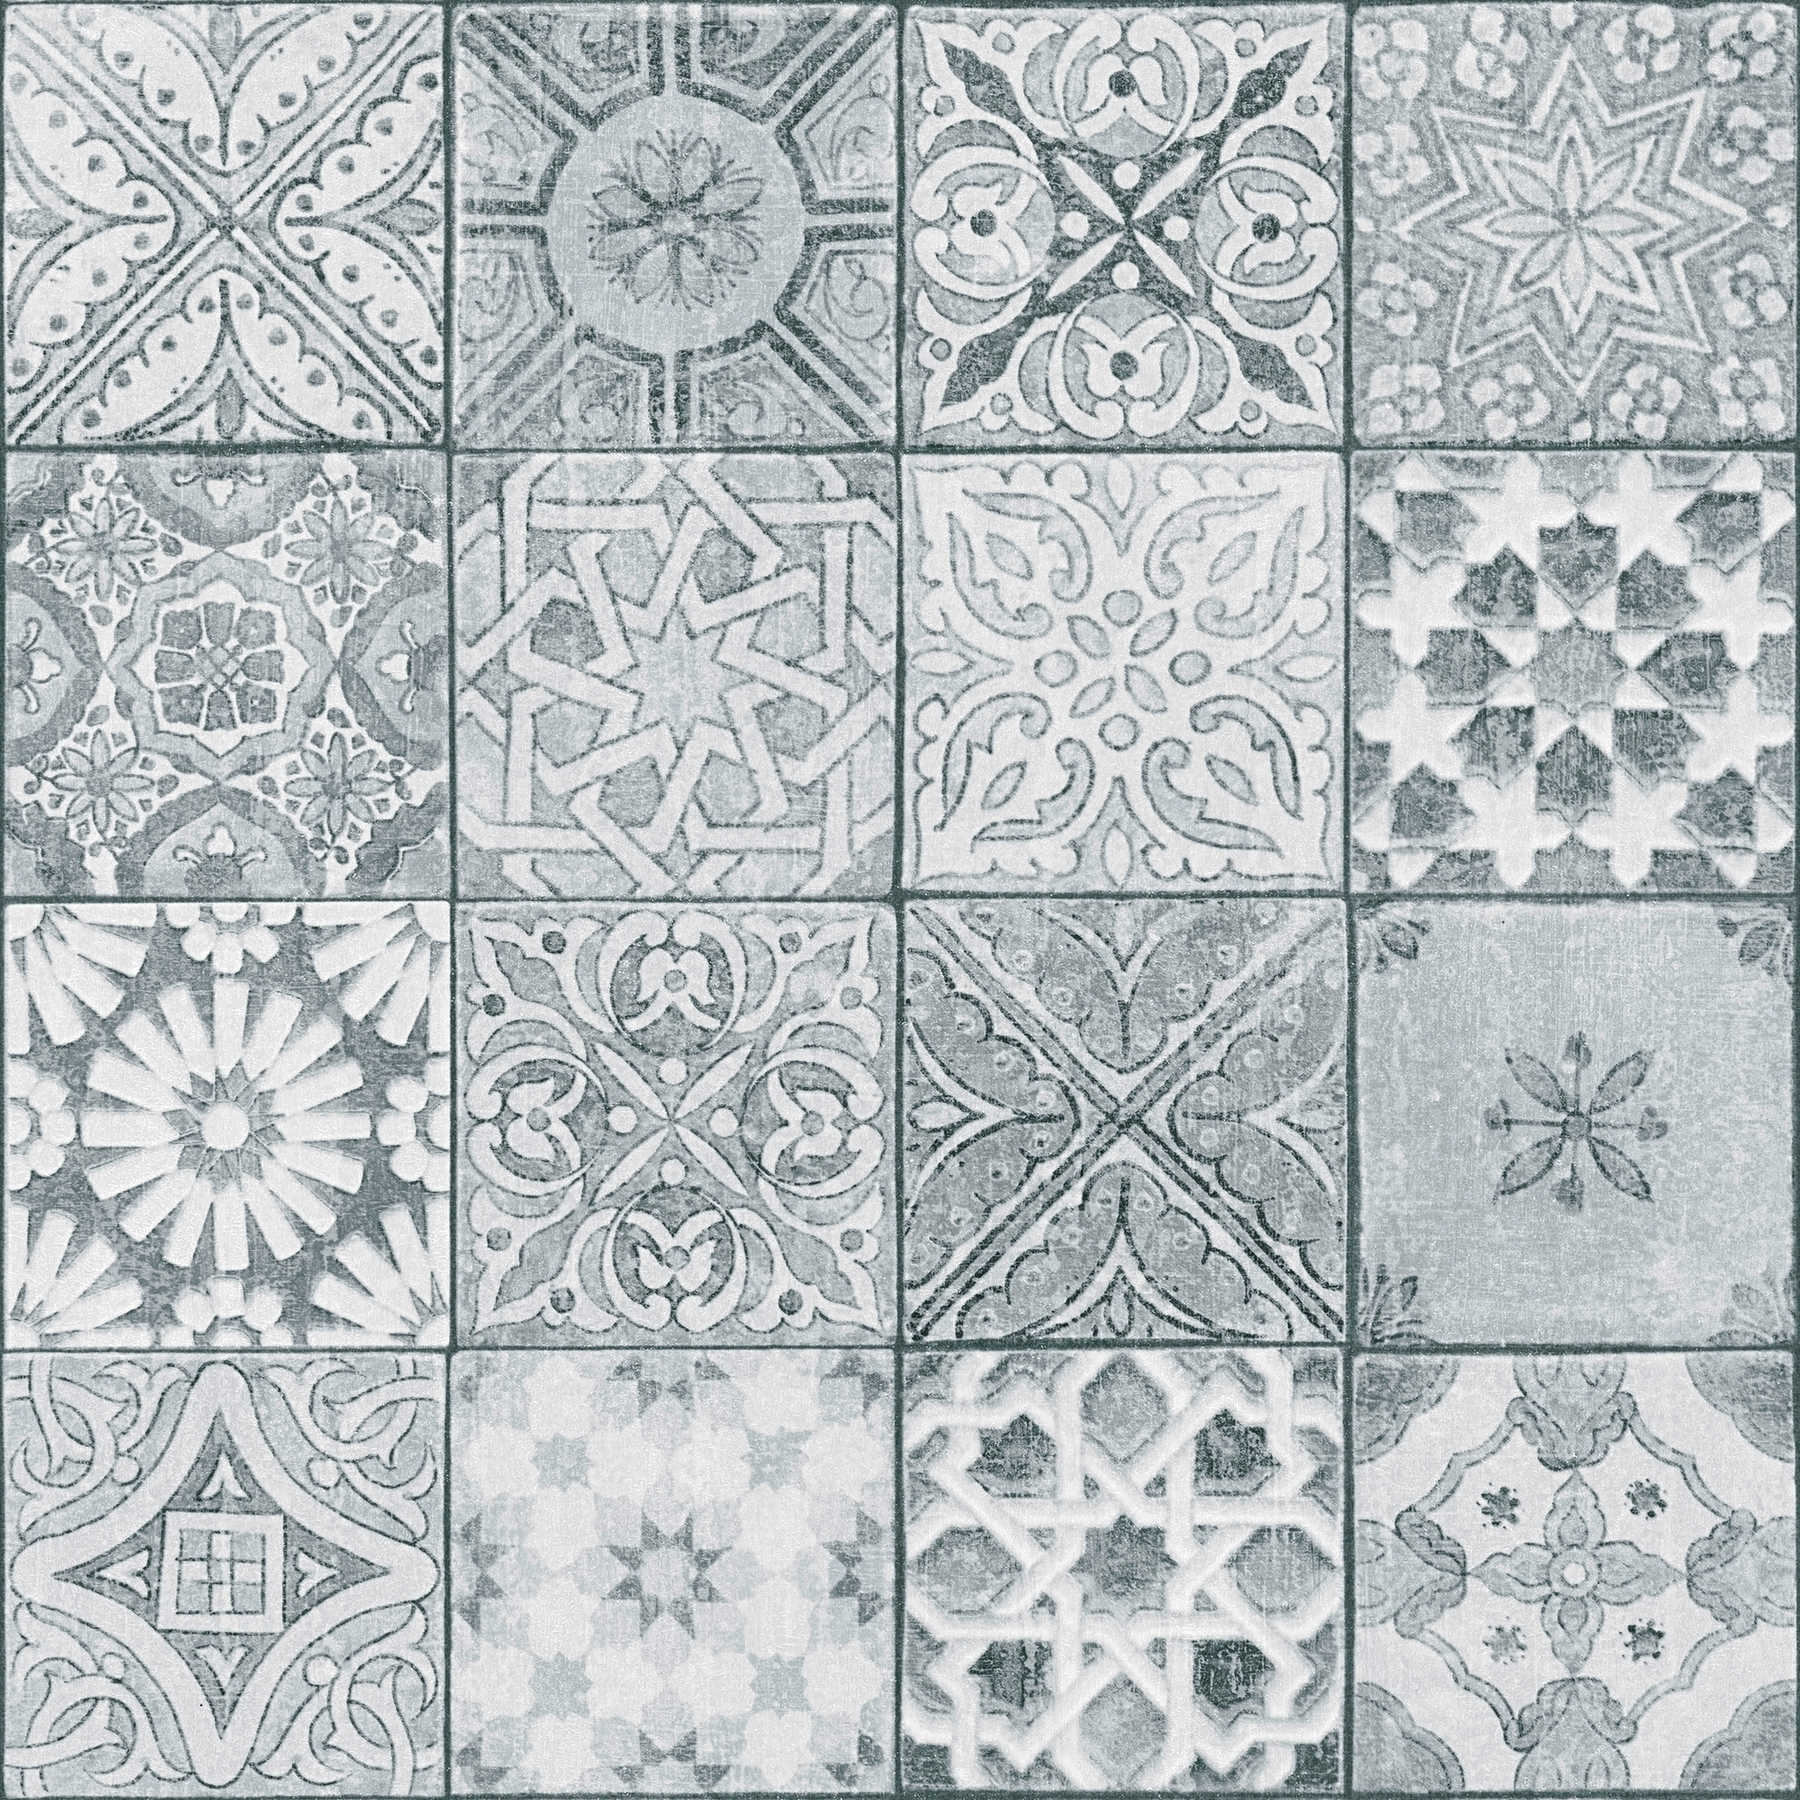         Fliesen-Tapete Mosaik Optik – Grau, Weiß, Schwarz
    